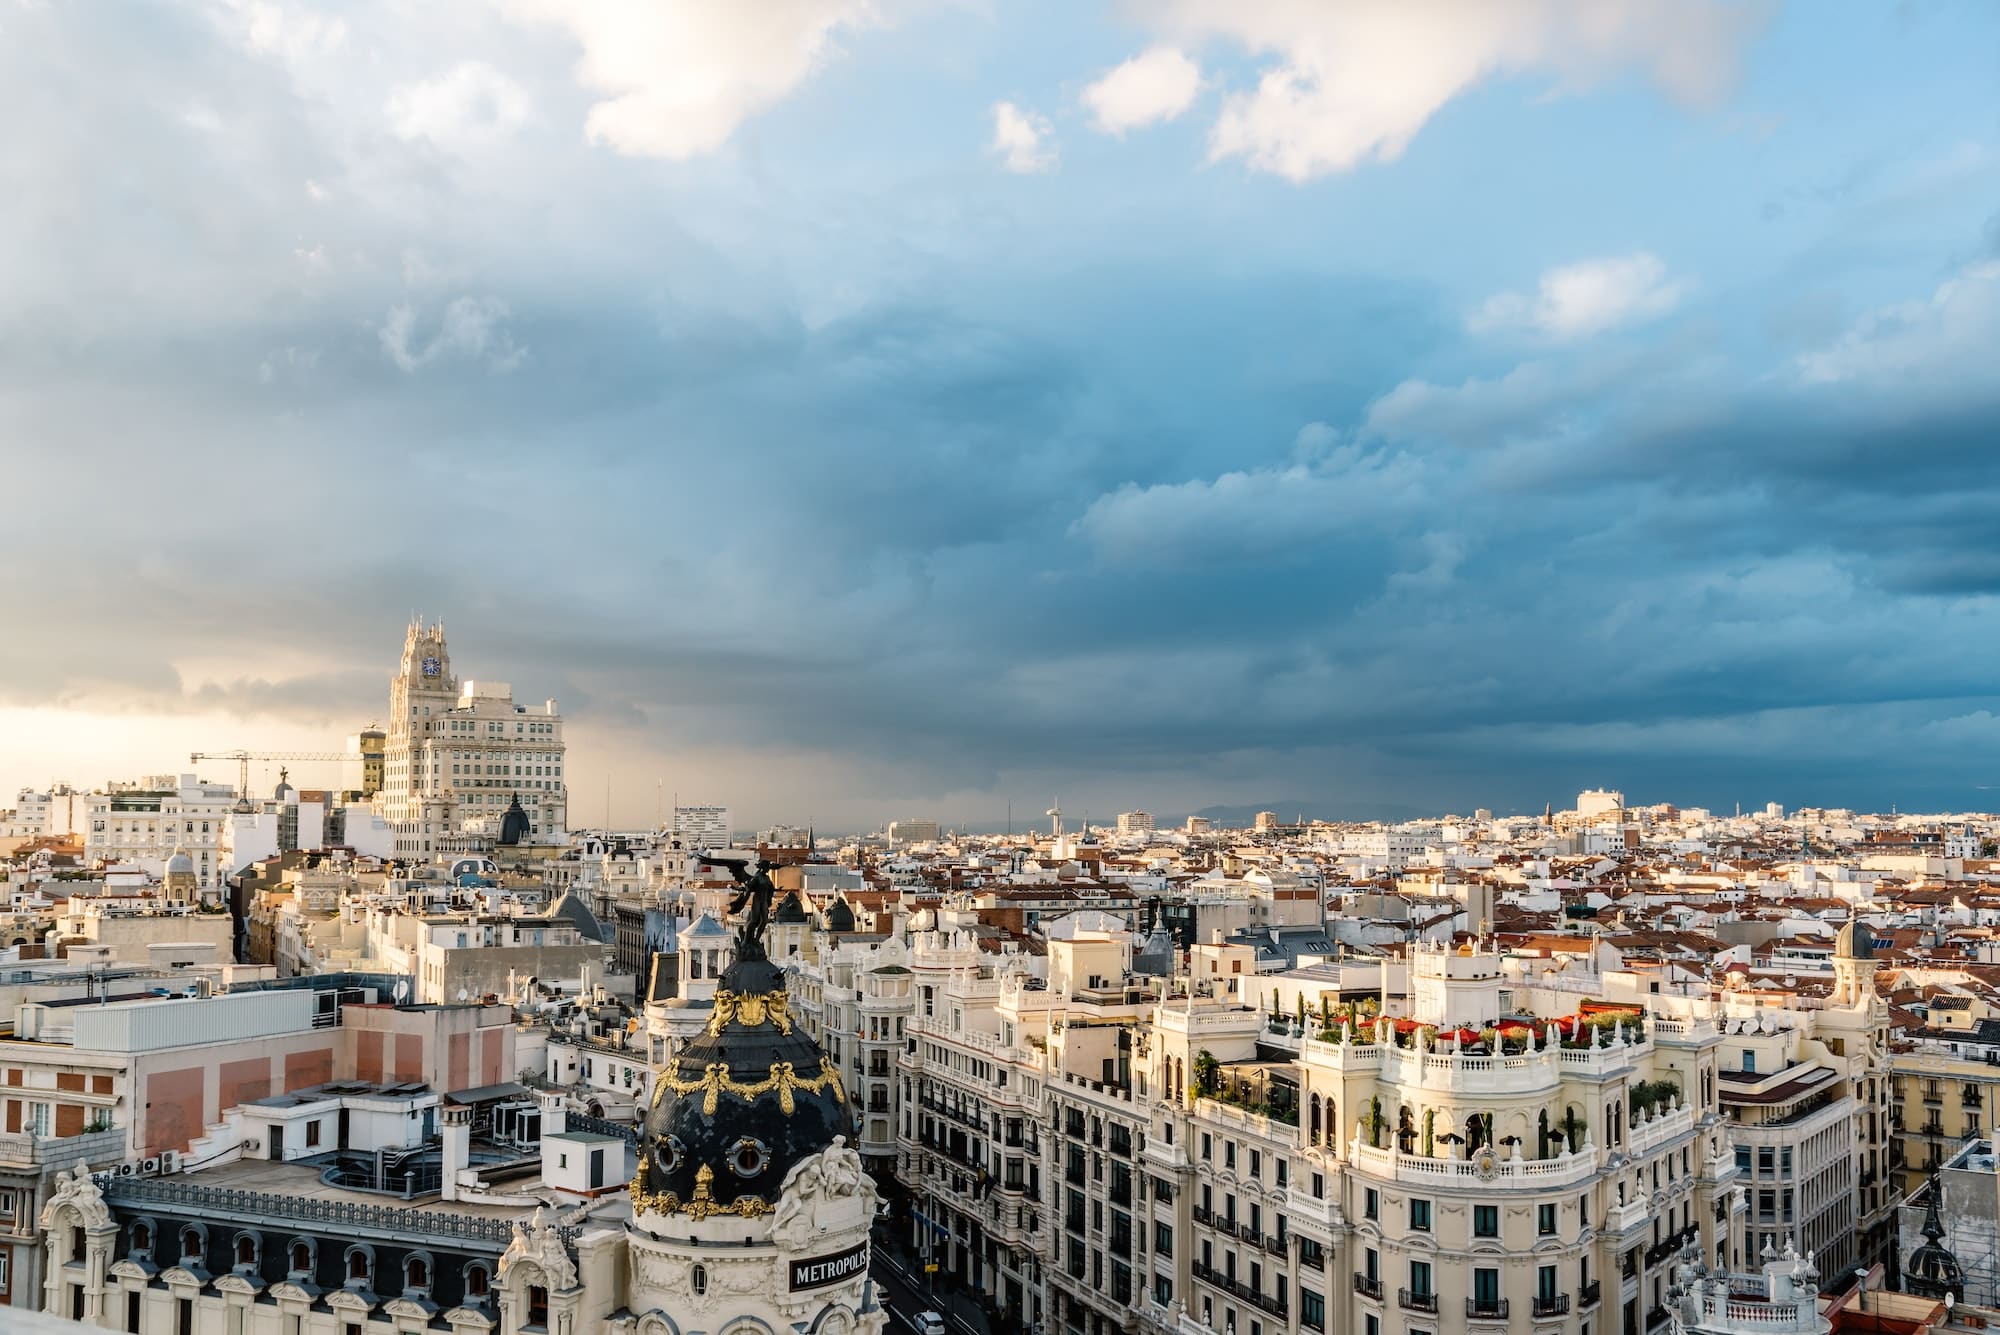 Skyline of Madrid city centre from Circulo de Bellas Artes rooftop, Spain.